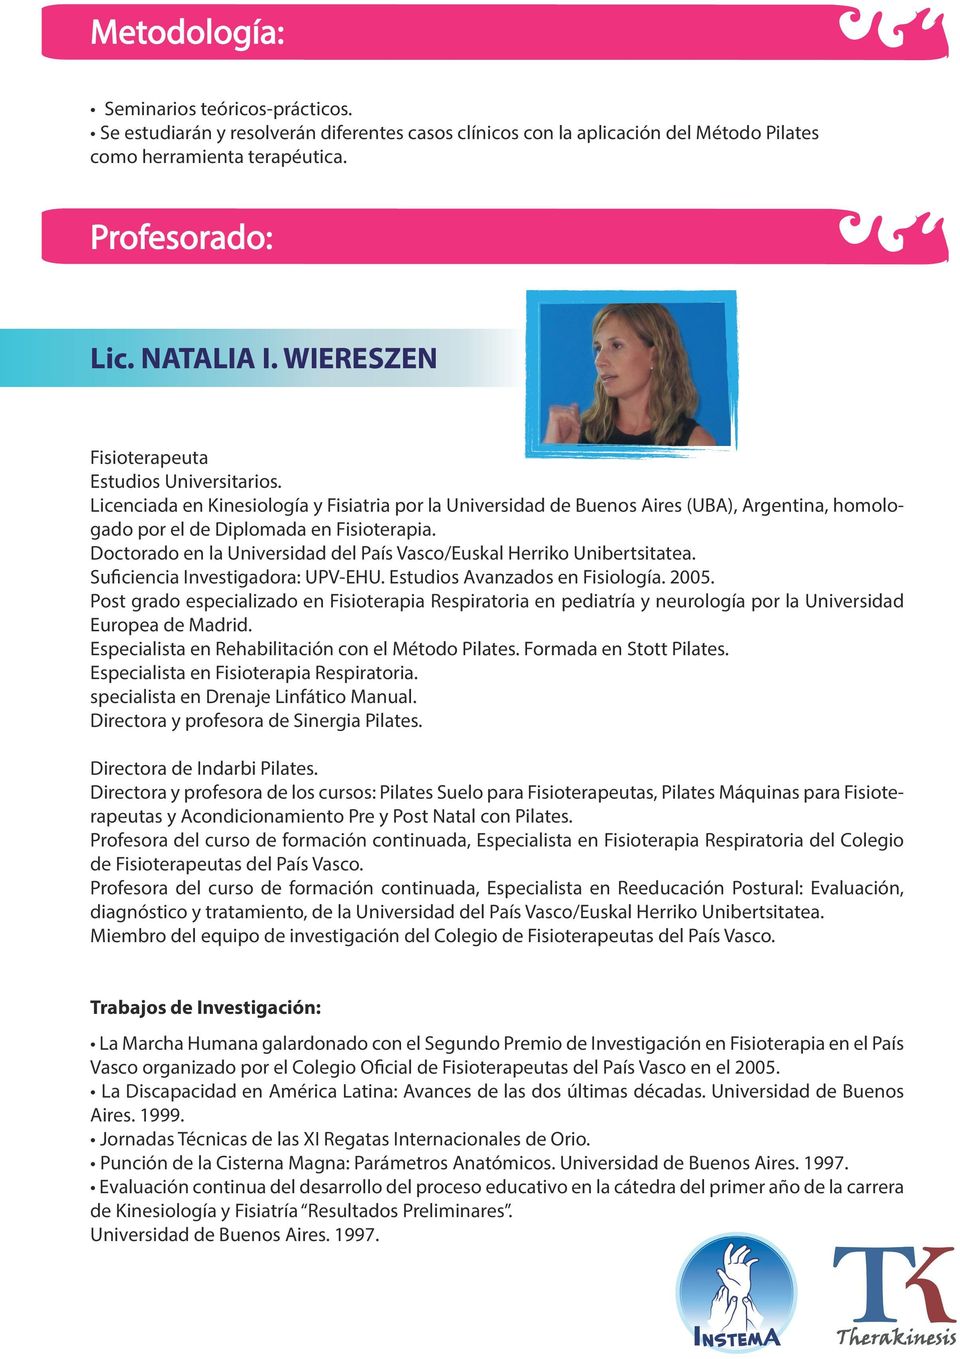 Doctorado en la Universidad del País Vasco/Euskal Herriko Unibertsitatea. Suficiencia Investigadora: UPV-EHU. Estudios Avanzados en Fisiología. 2005.